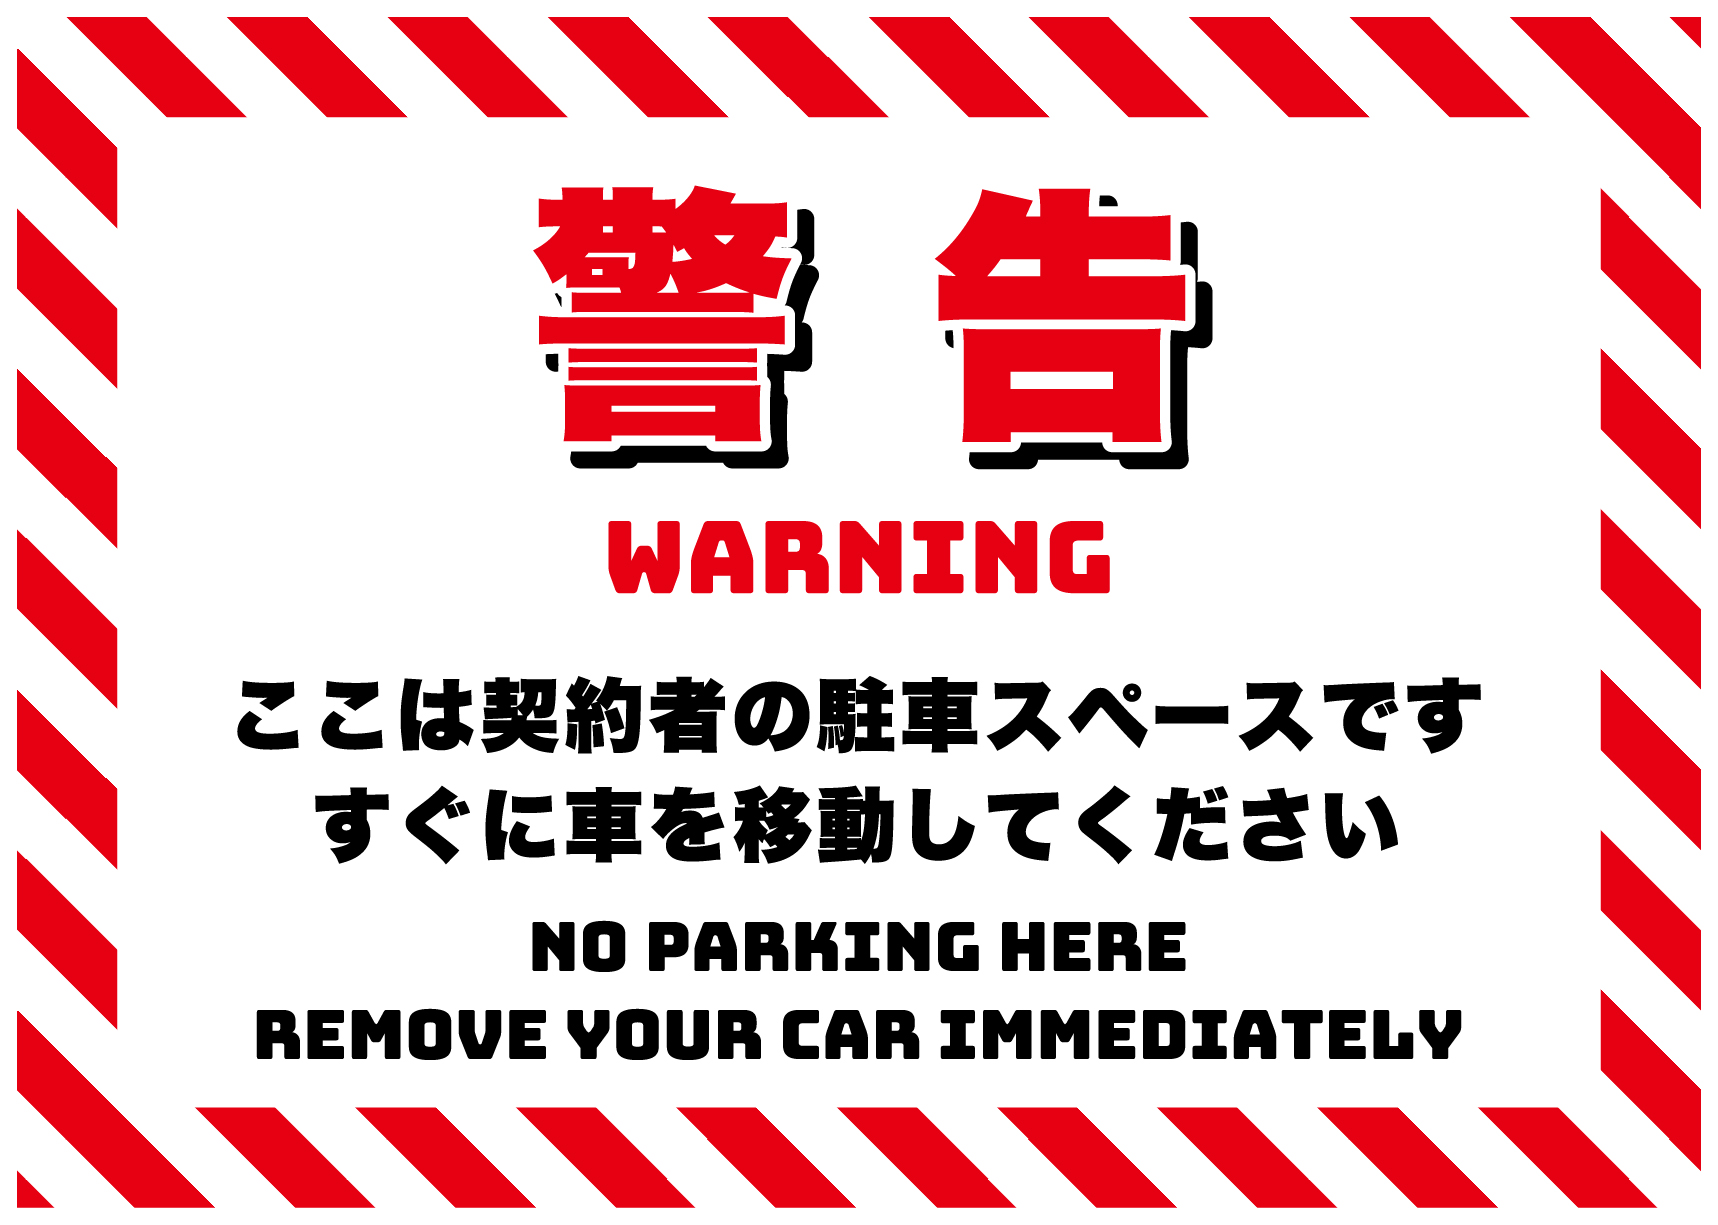 駐車禁止、すぐに移動してくださいの張り紙